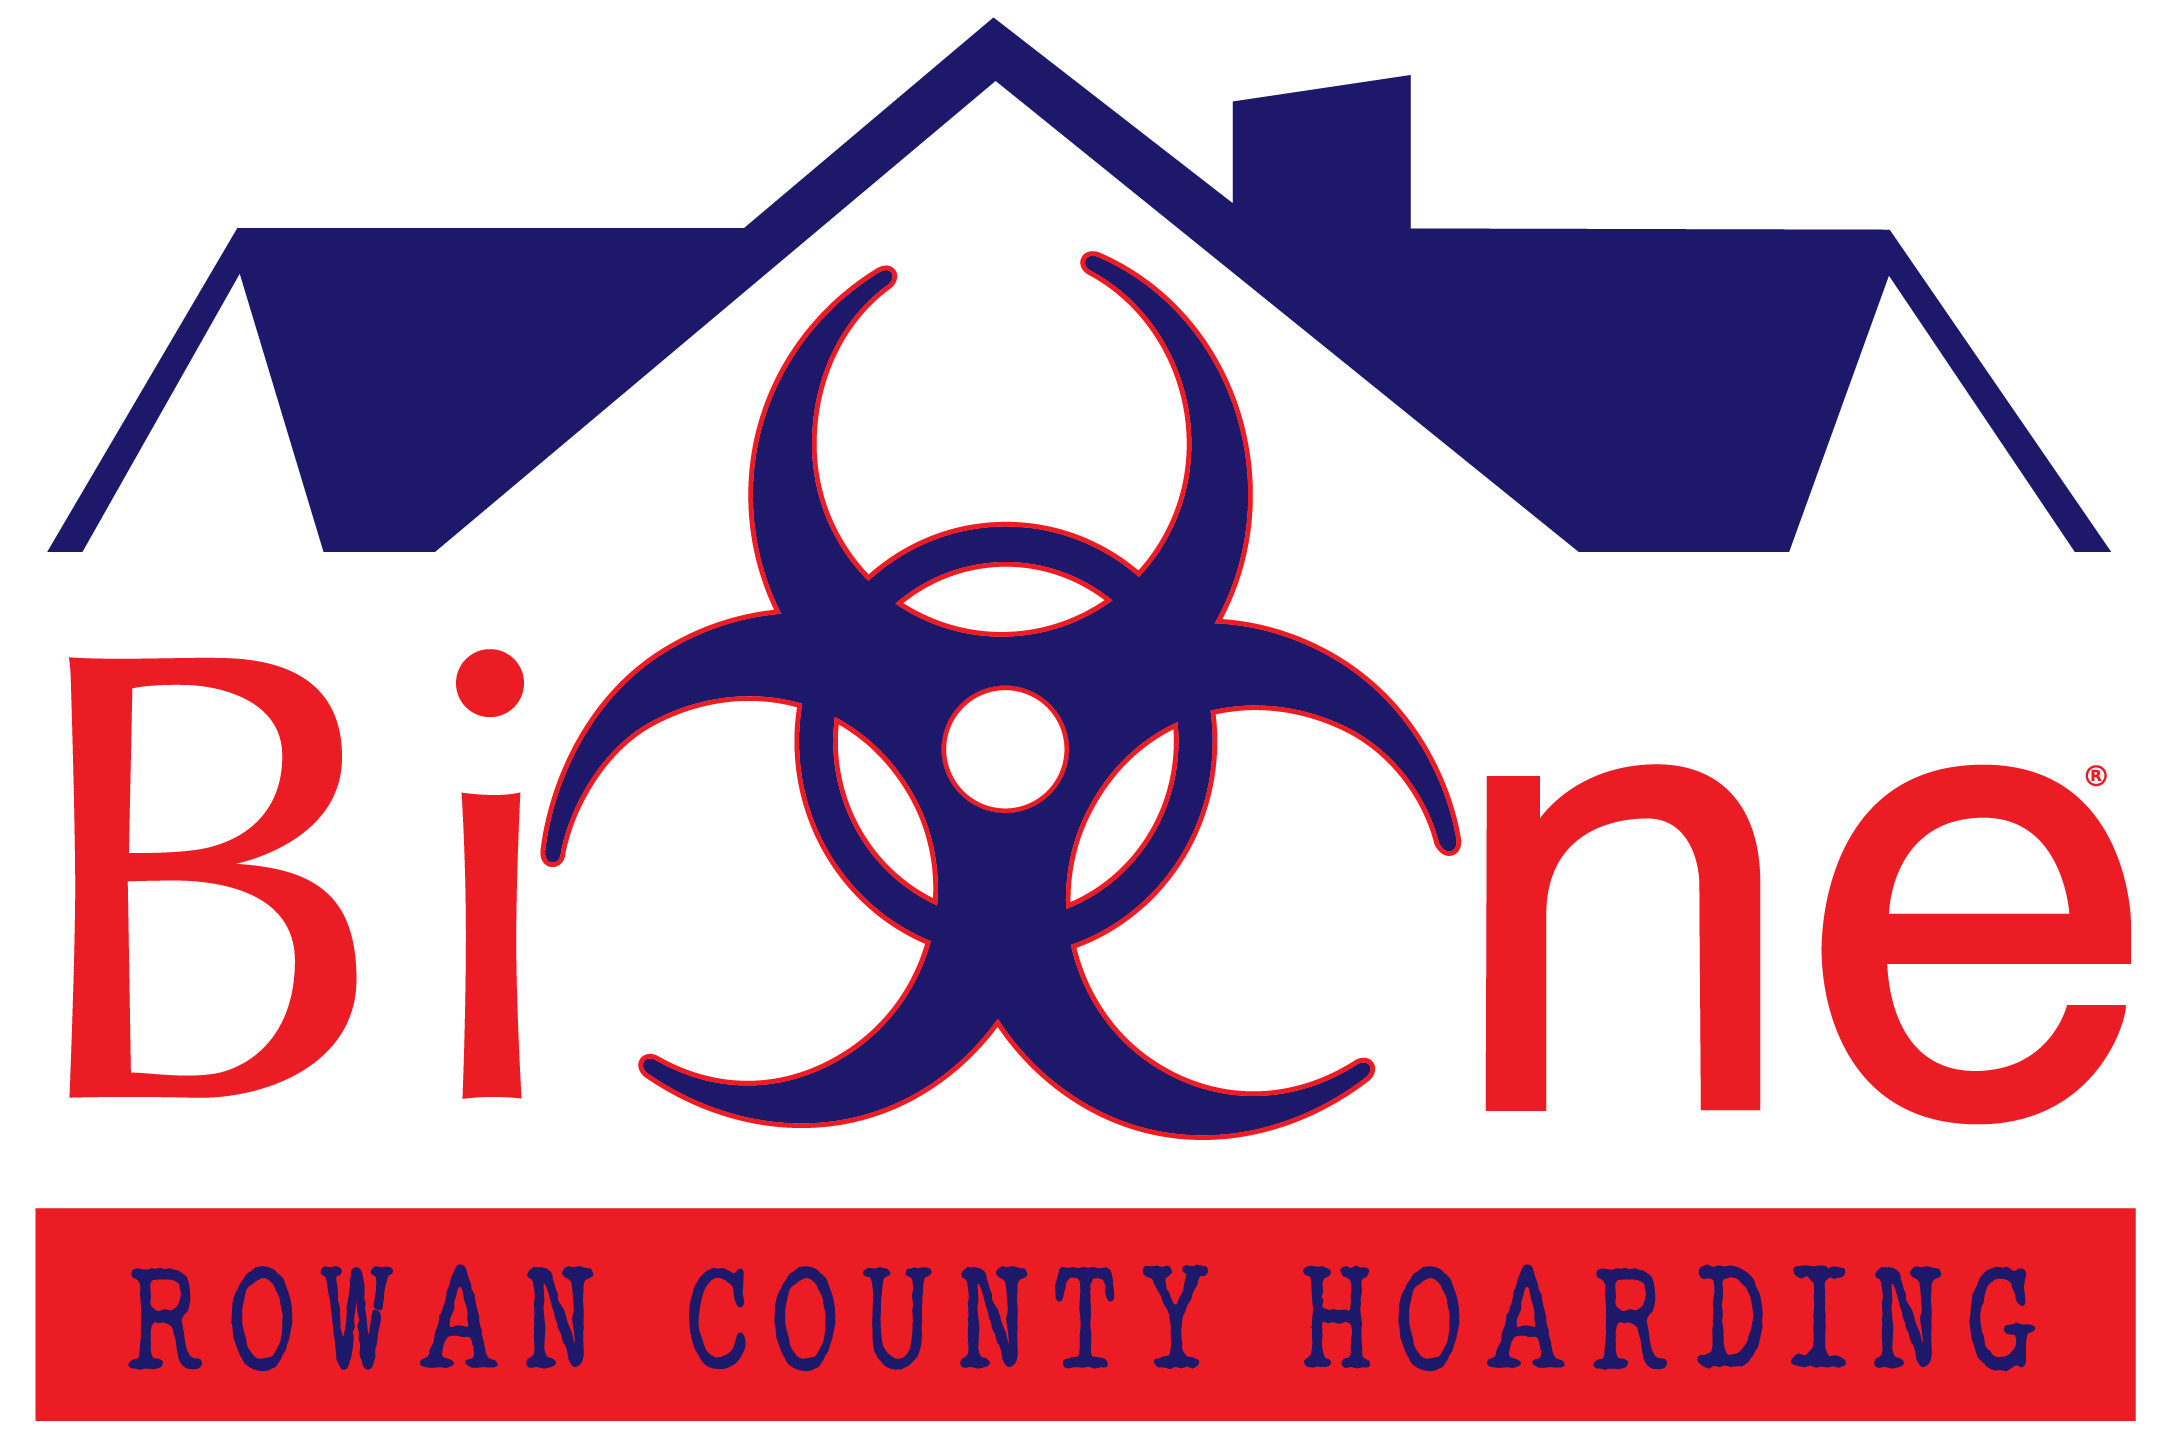 Rowan County Hoarding